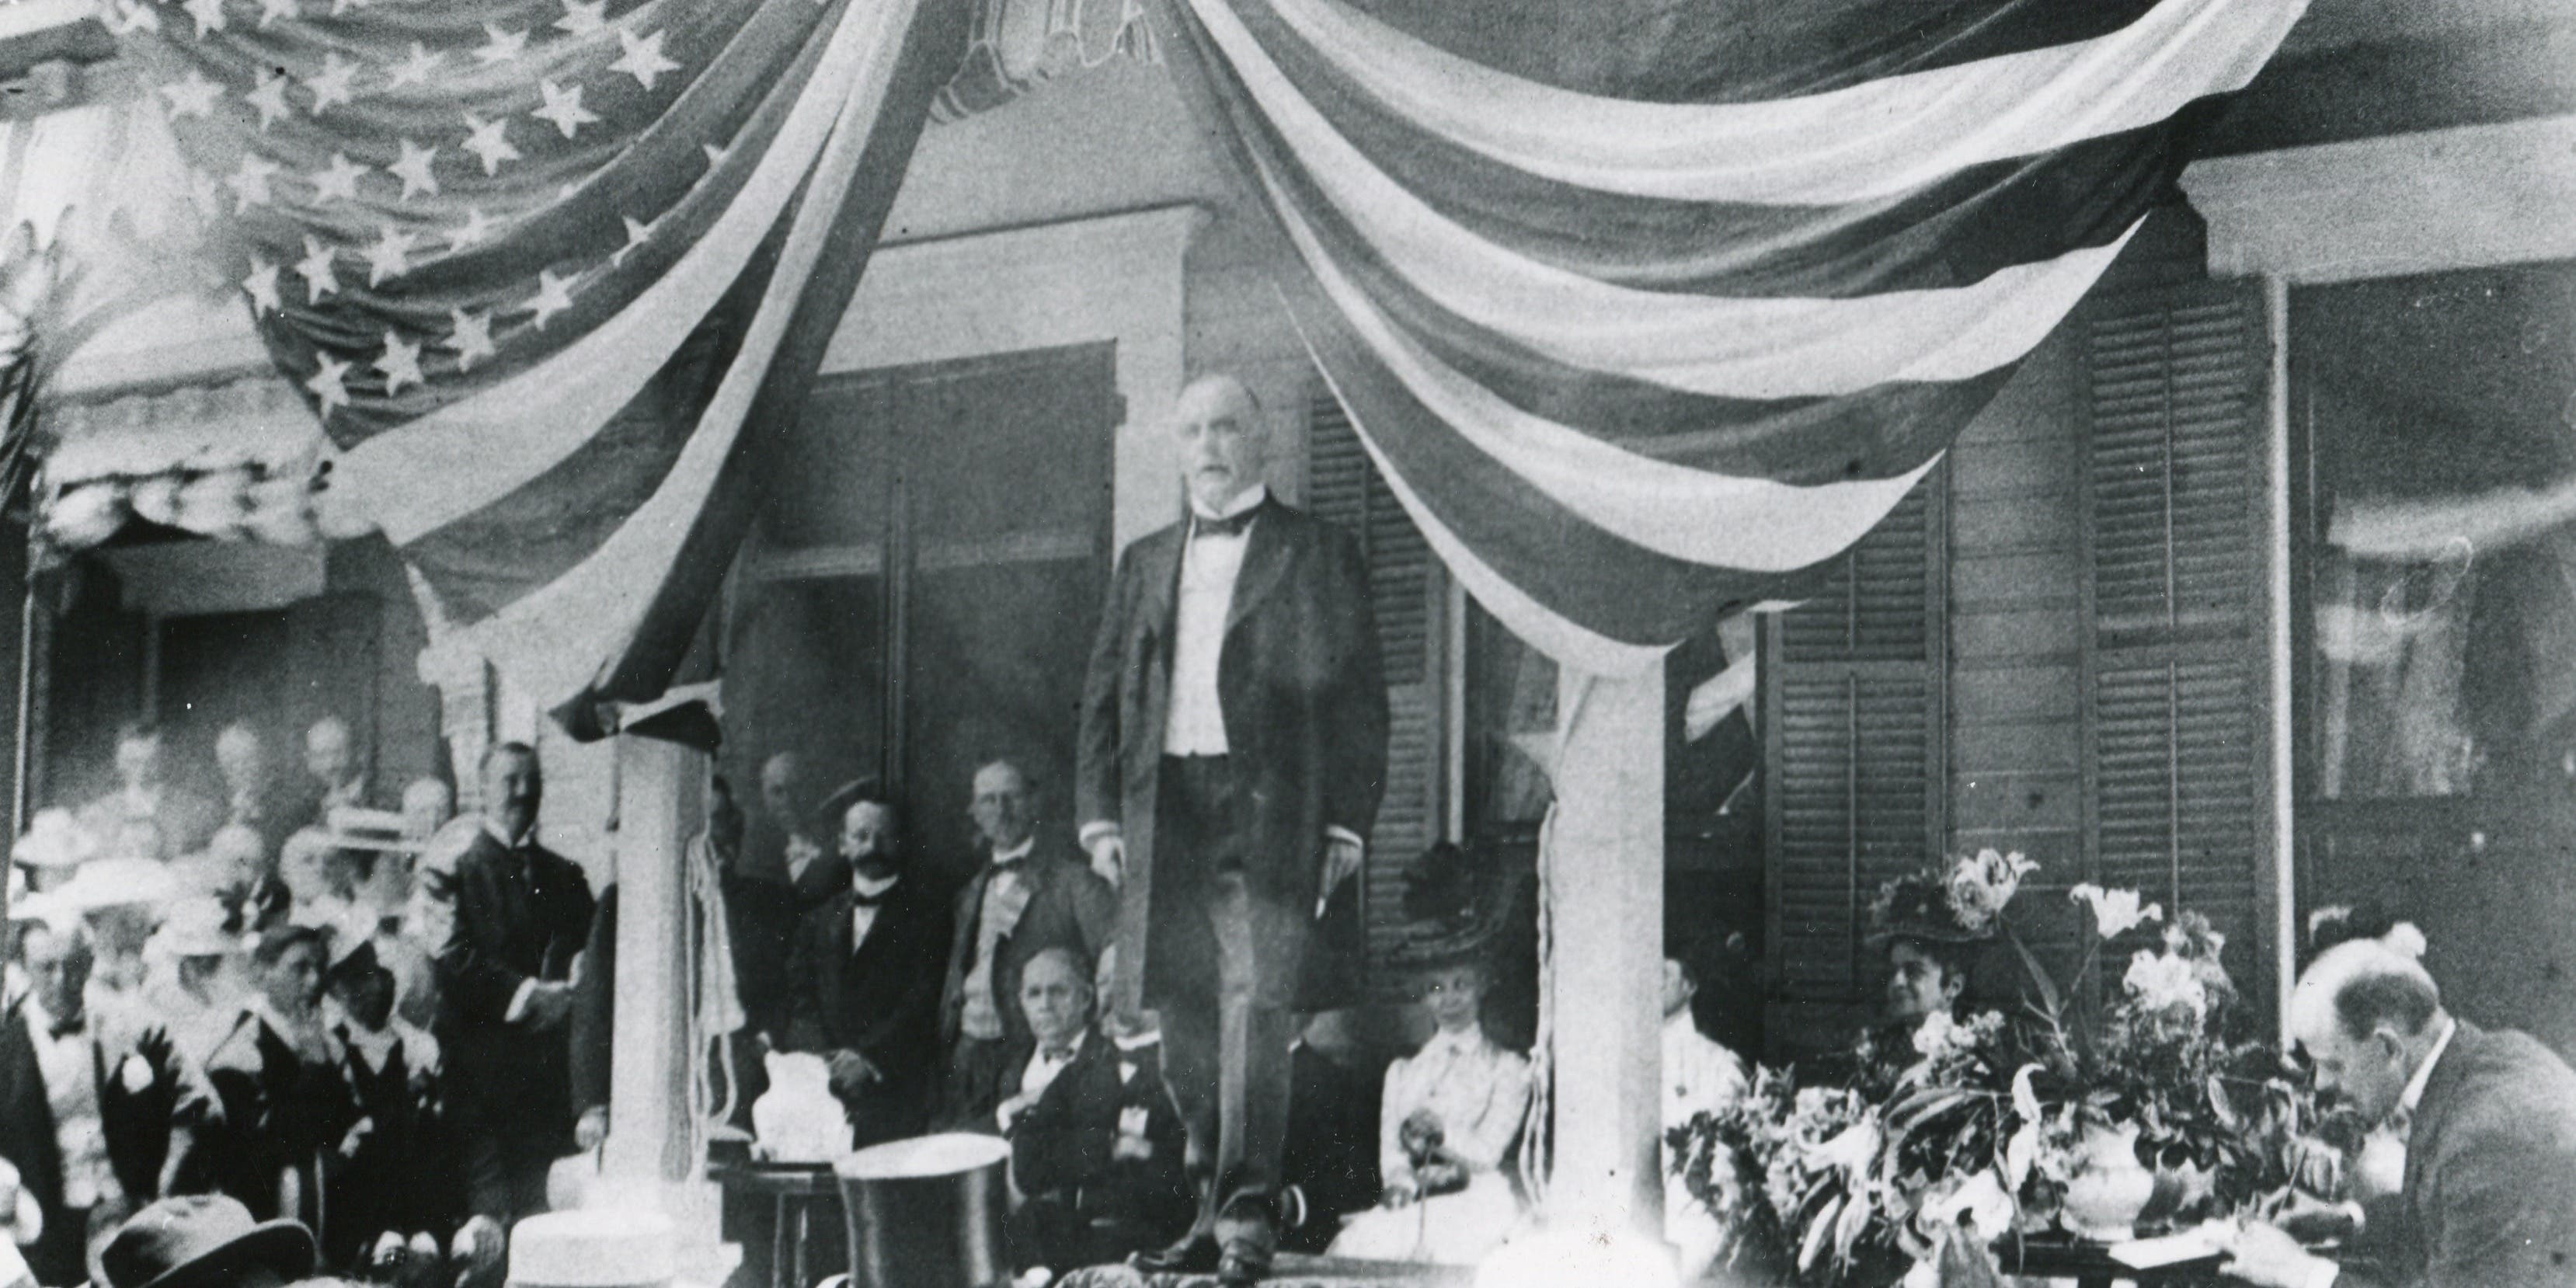 William McKinley speaking to a crowd, 1900.